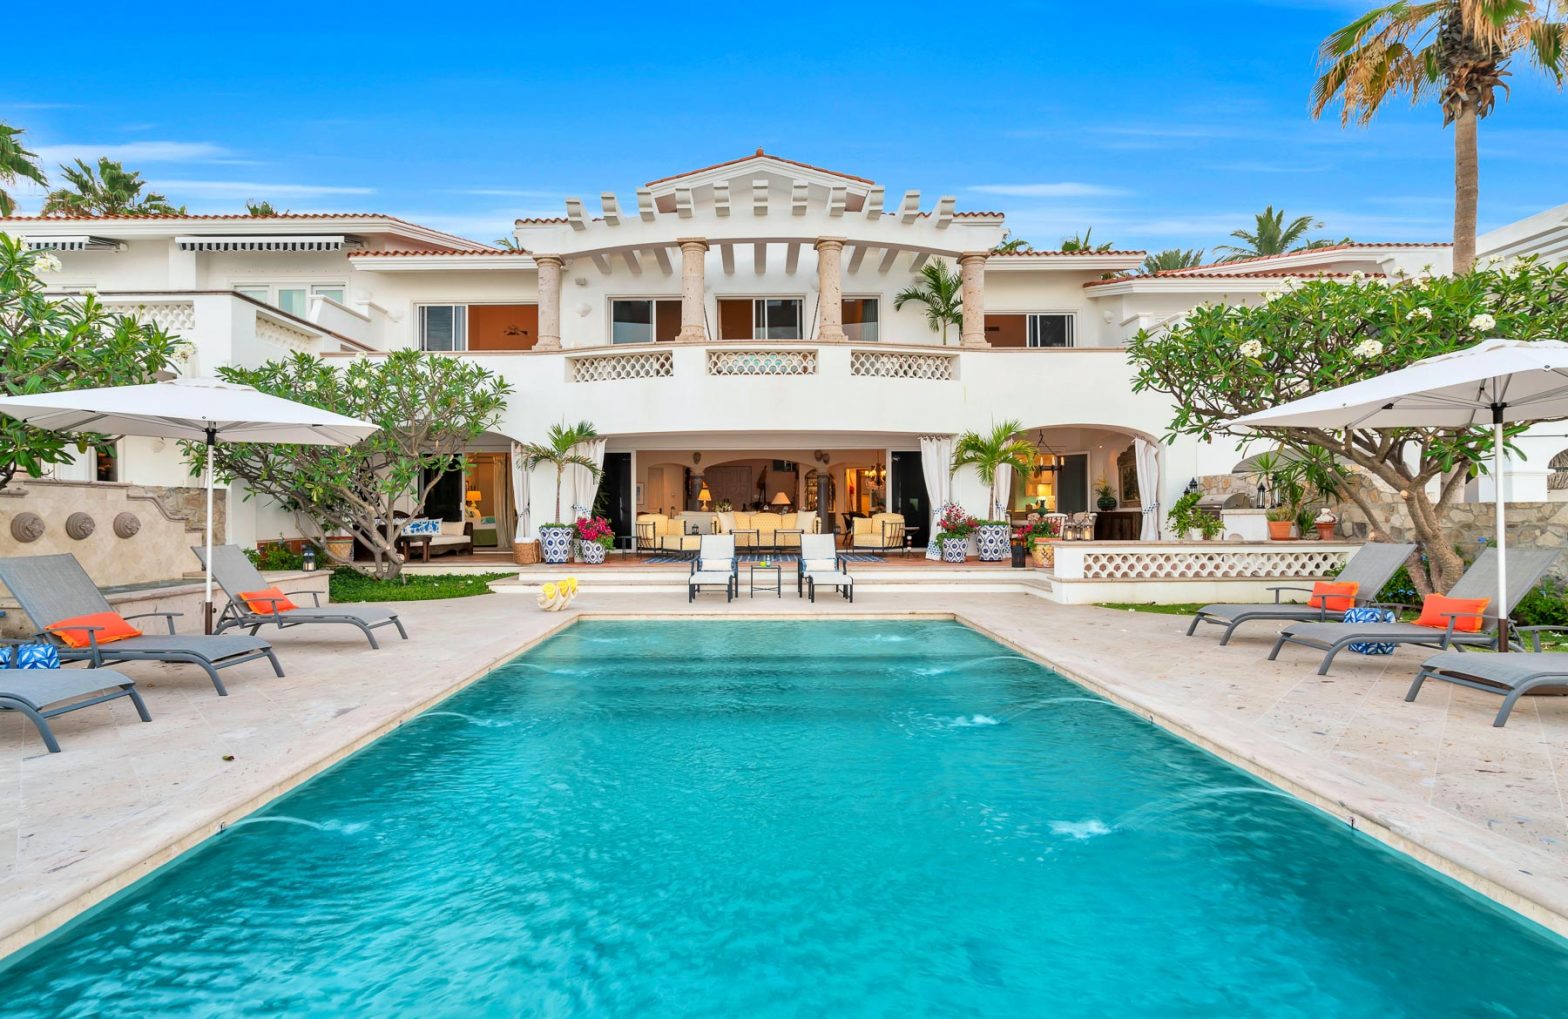 Villa 313 is a luxury villa in Los Cabos